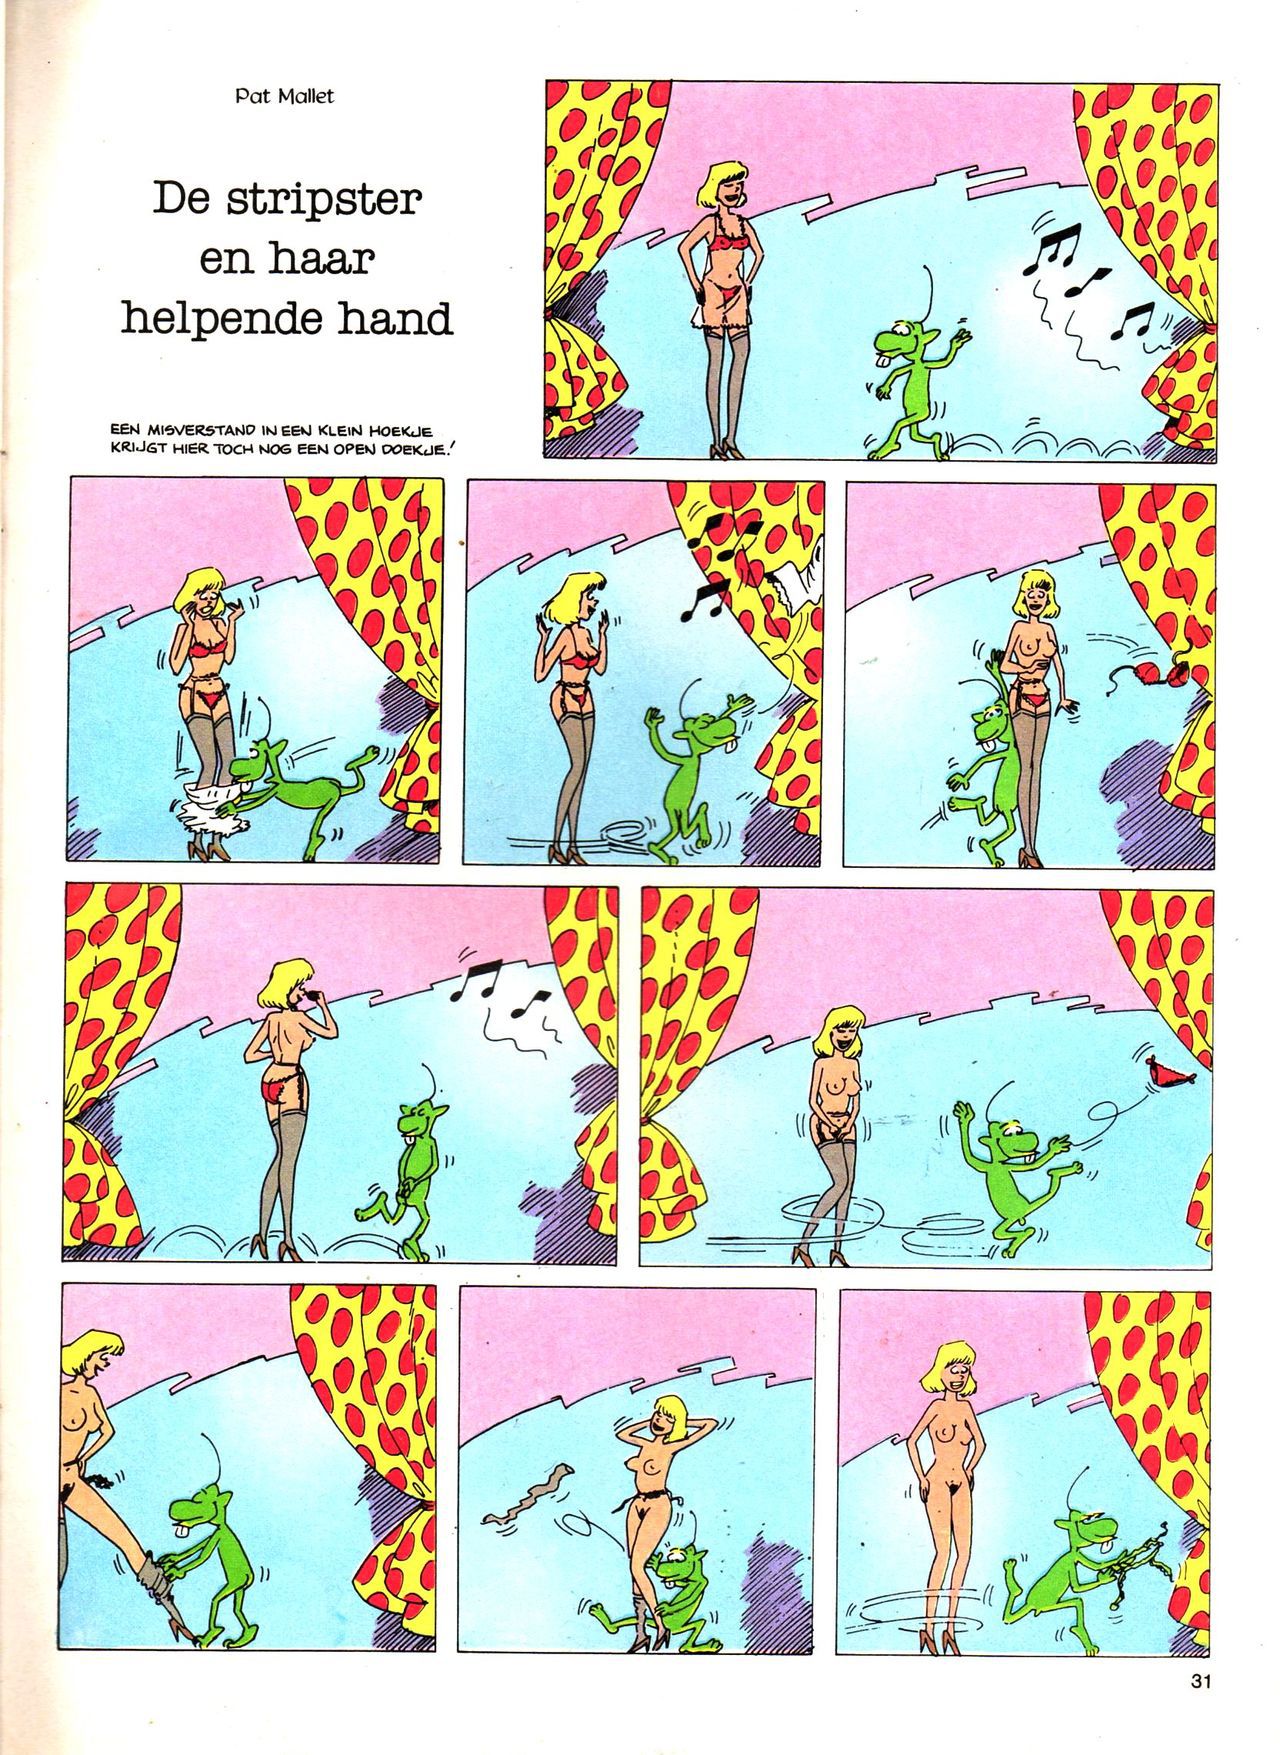 Het Is Groen En Het.. - 04 - Mag Ik Die Ballen.. OH, PARDON! (Dutch) Een oude humoristische serie van Pat Mallet 31